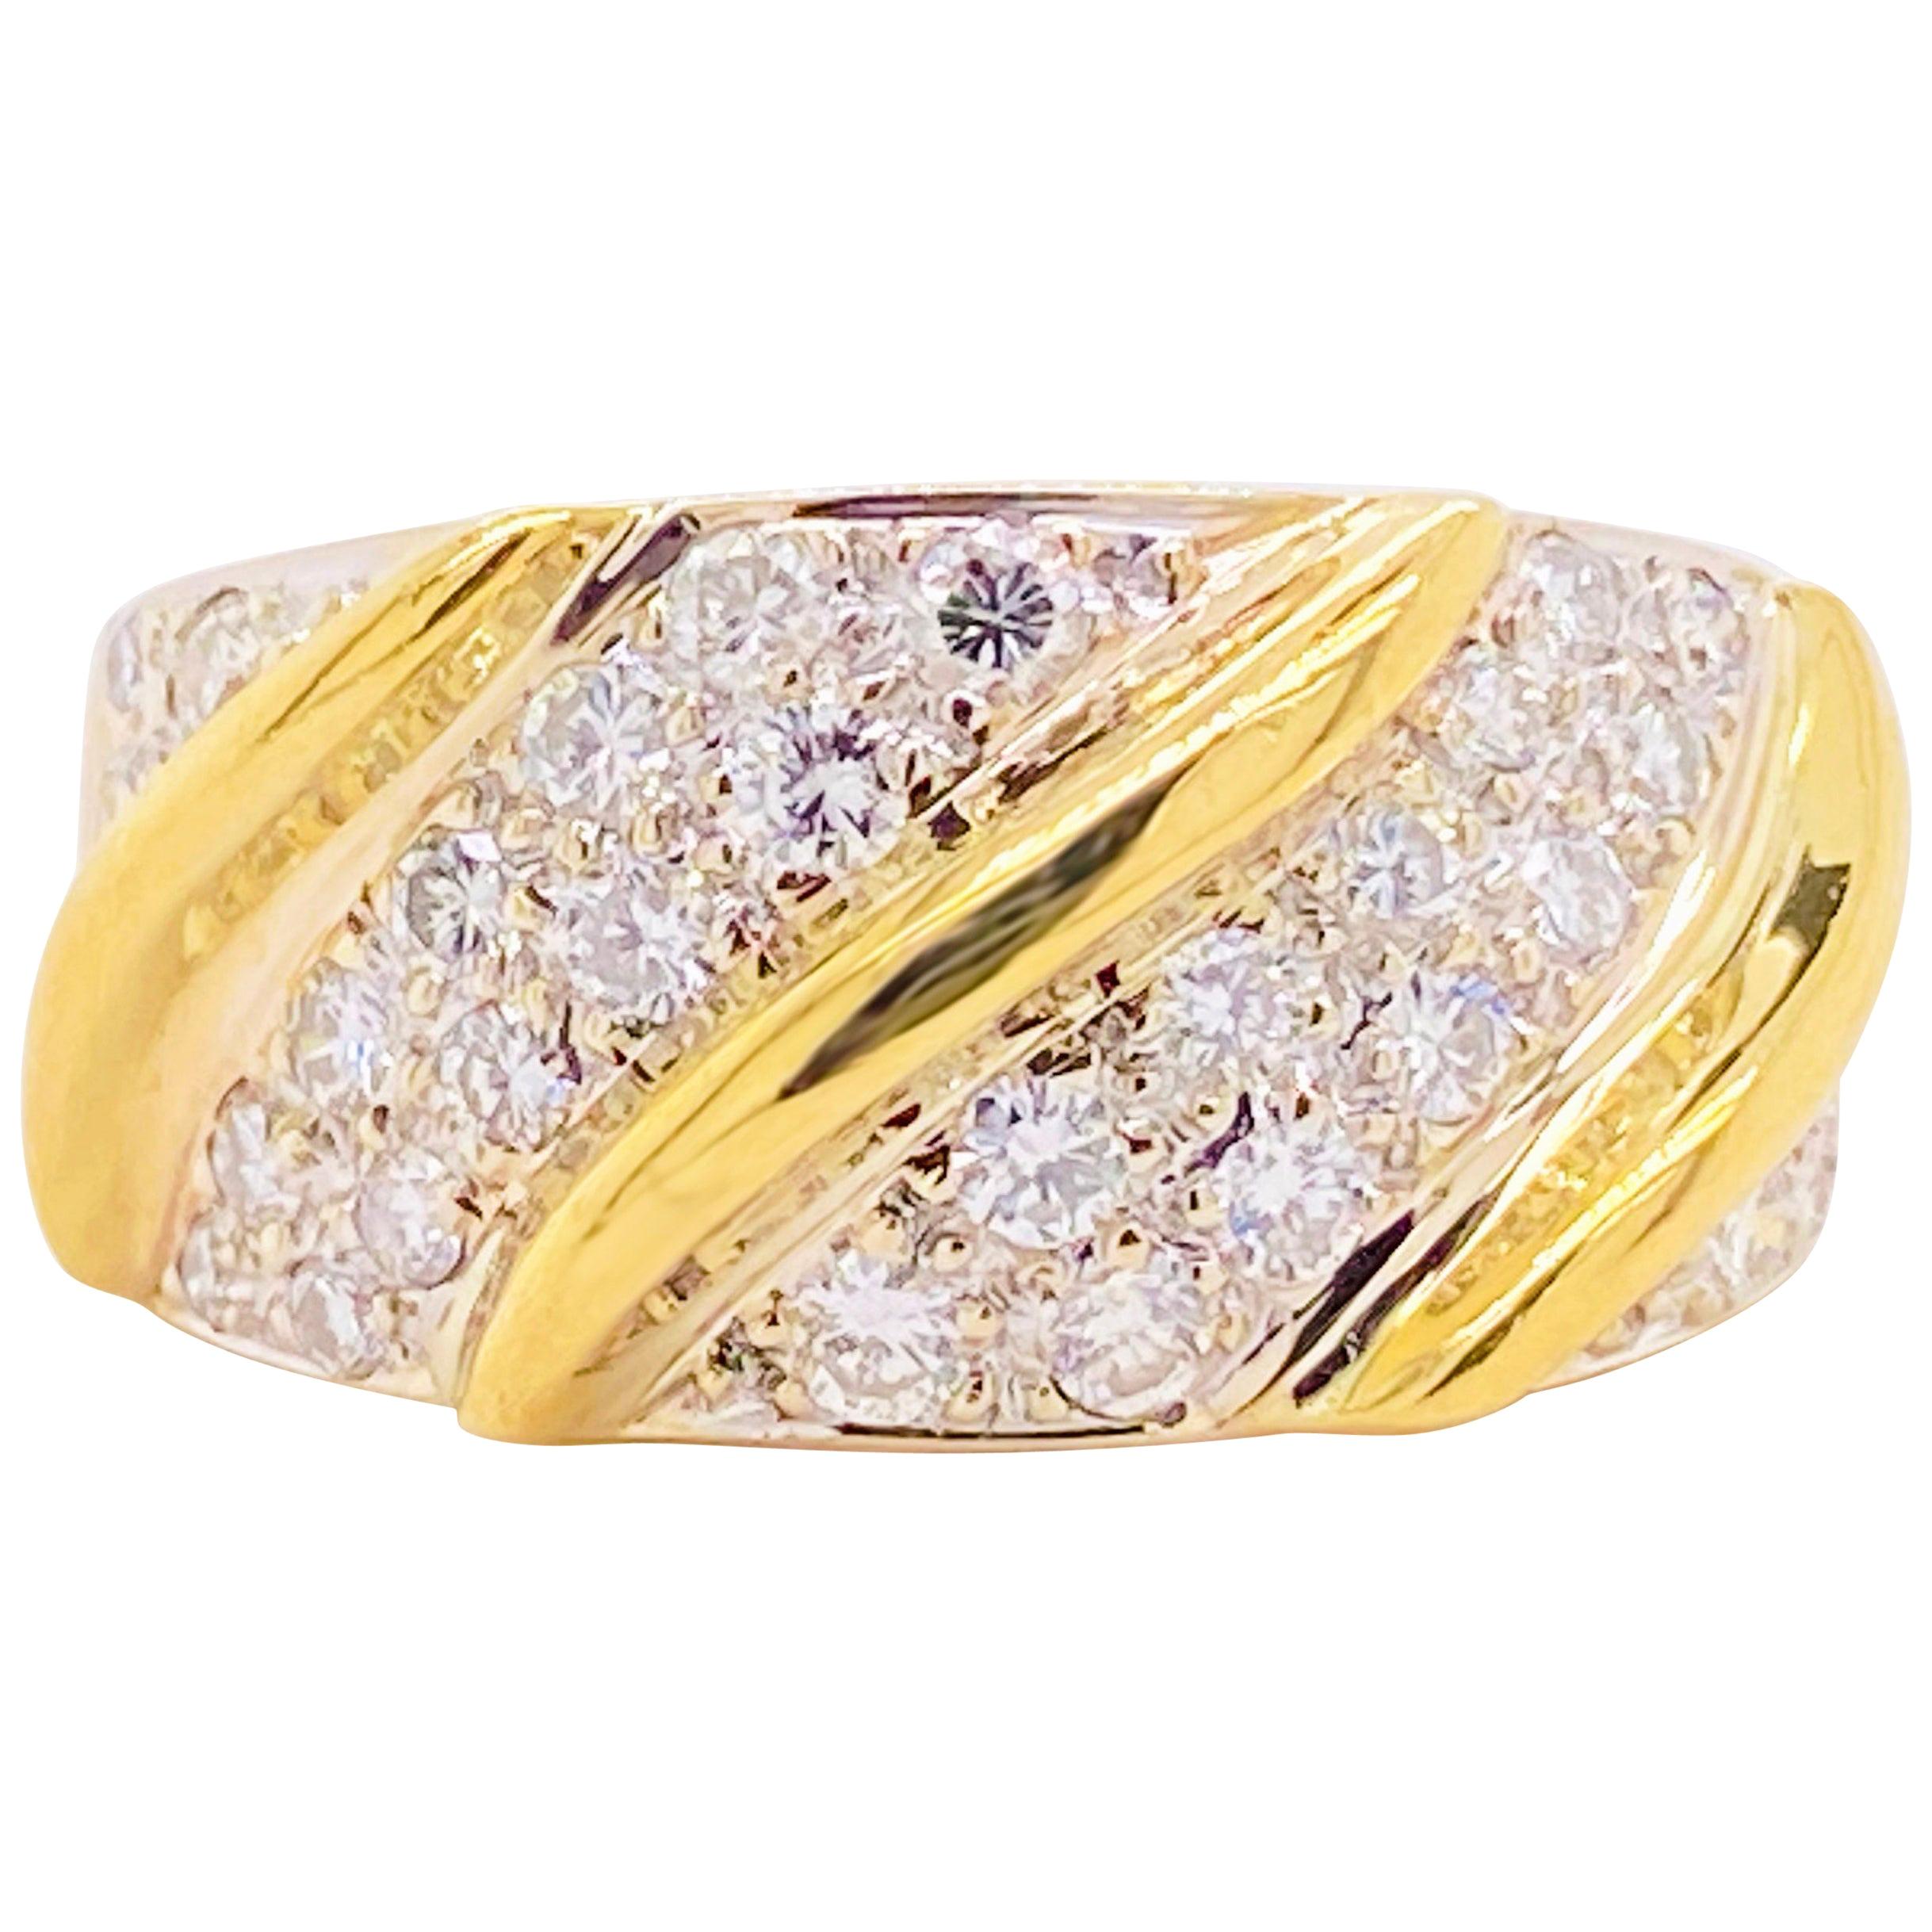 En vente :  Large anneau torsadé en or jaune avec diamants pavés, anneau bombé